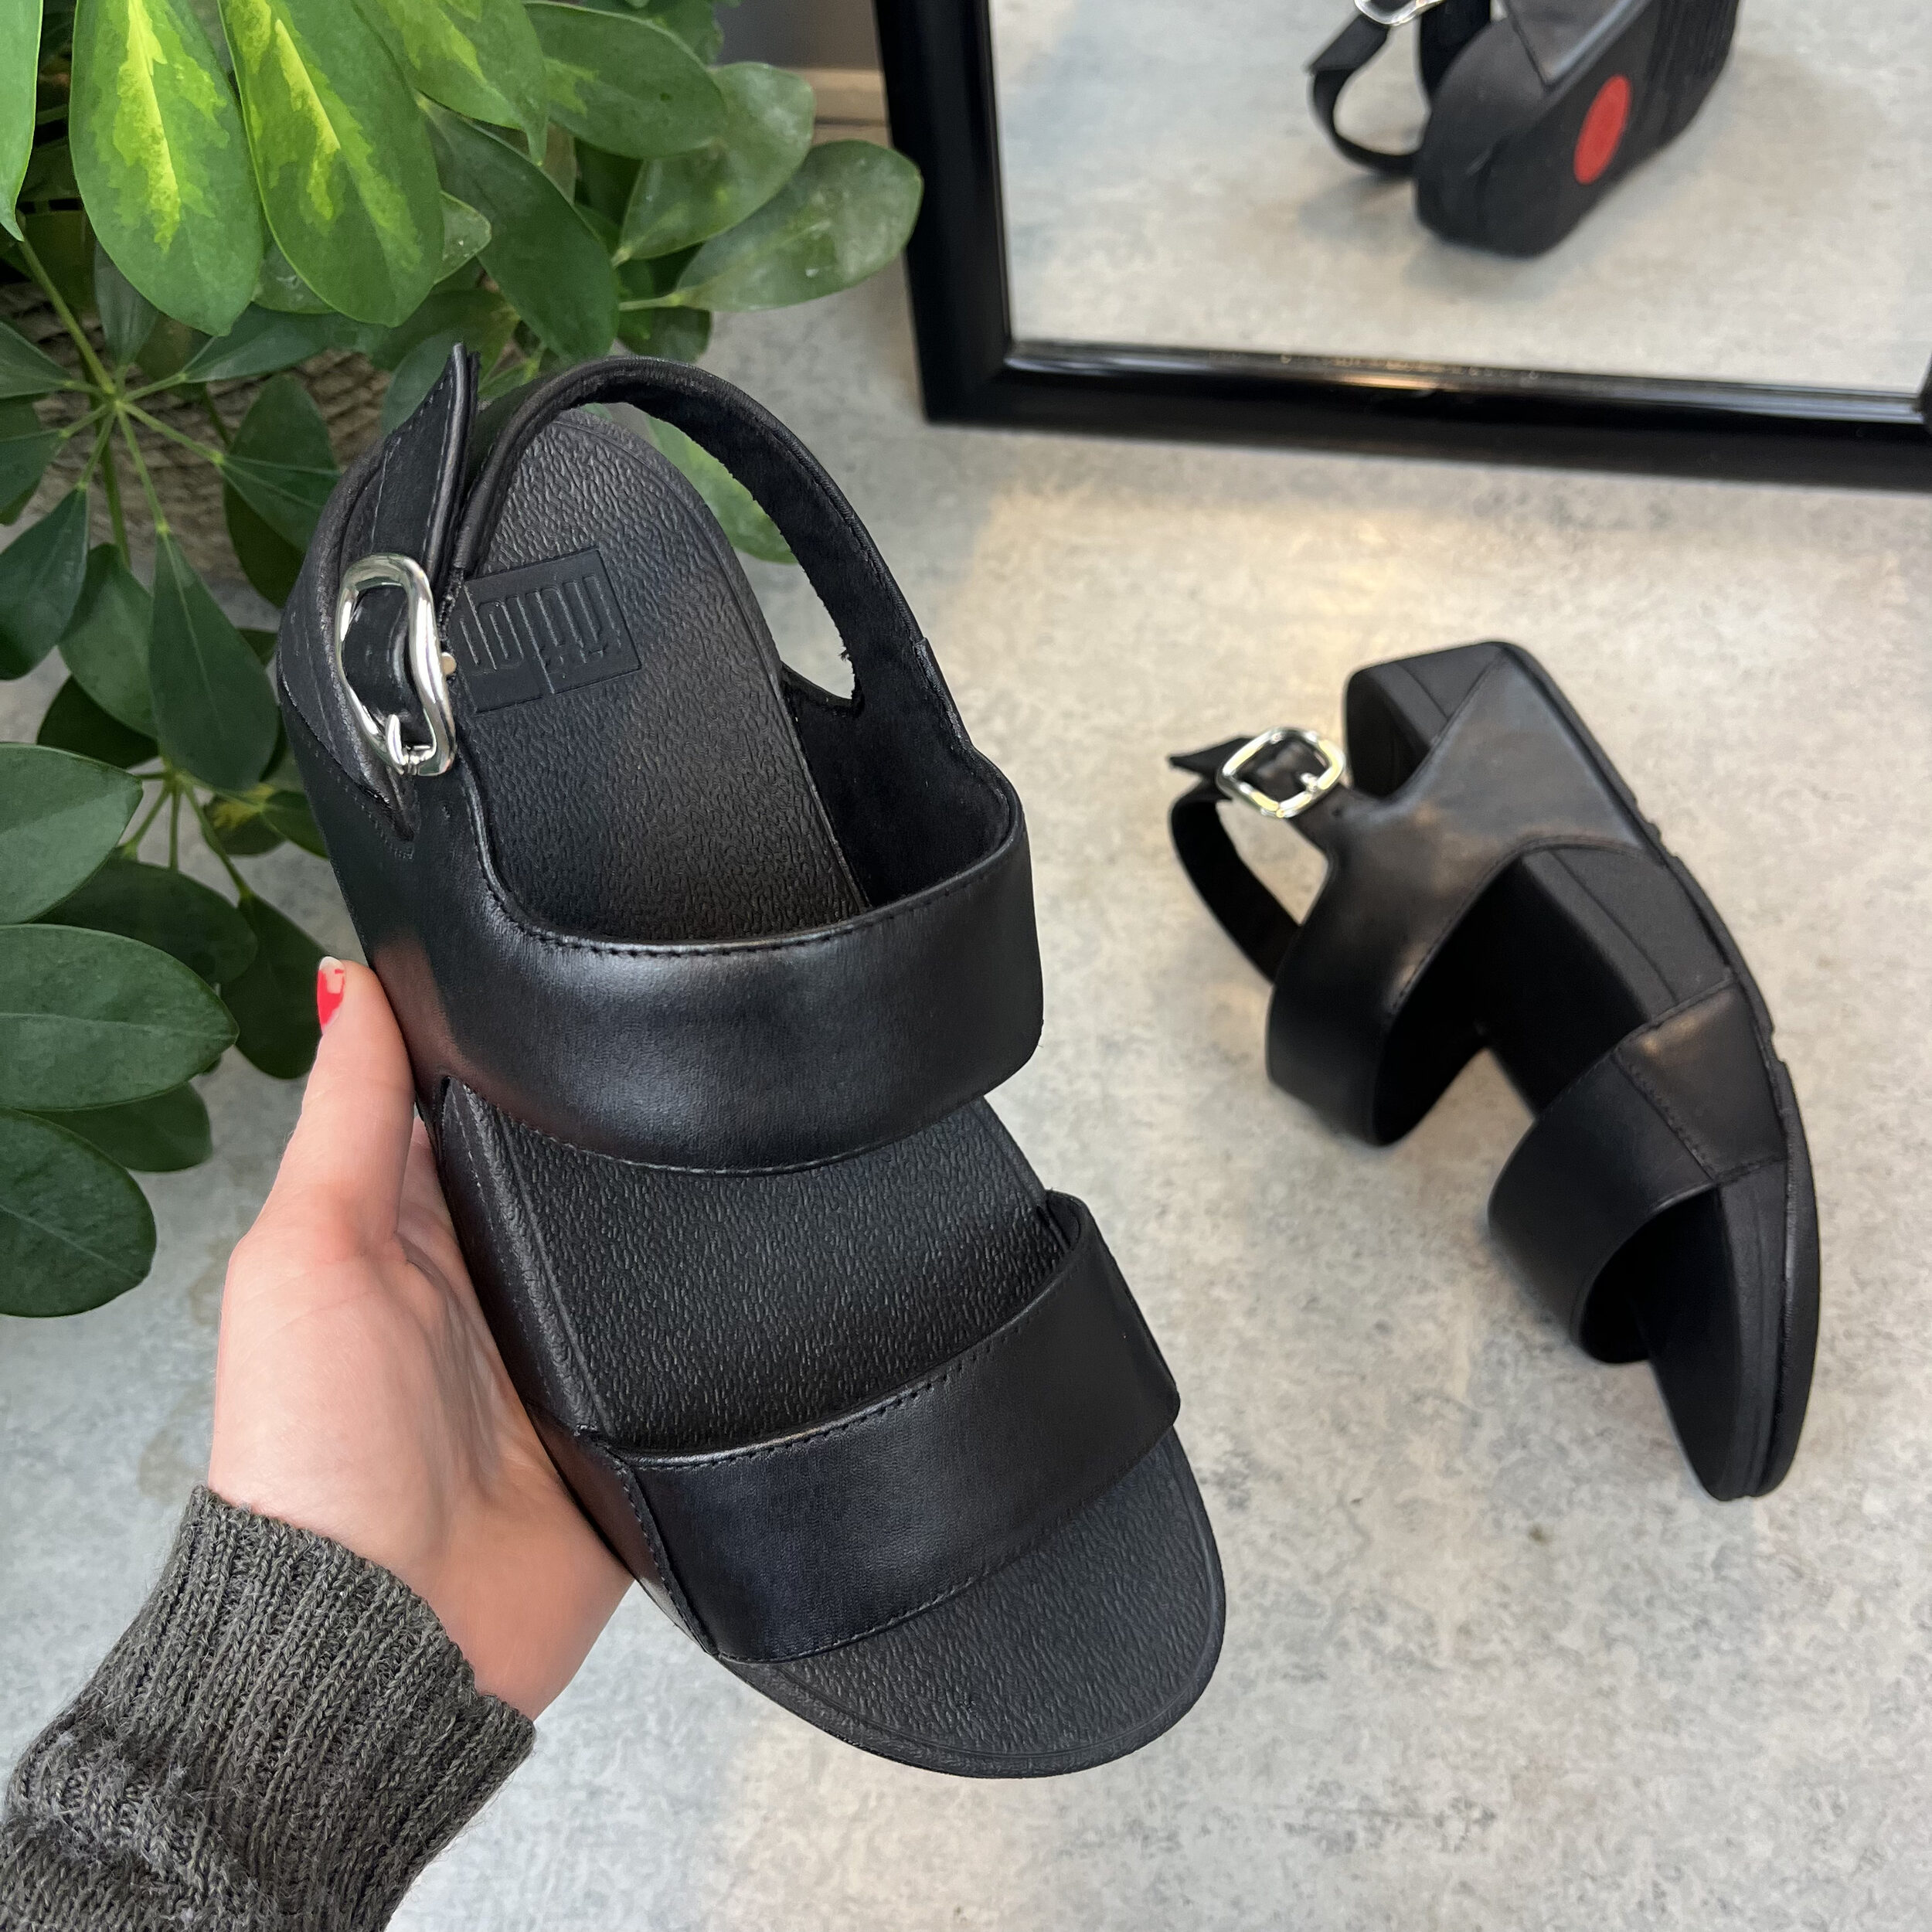 Lulu læder sandal fra FitFlop med komfort